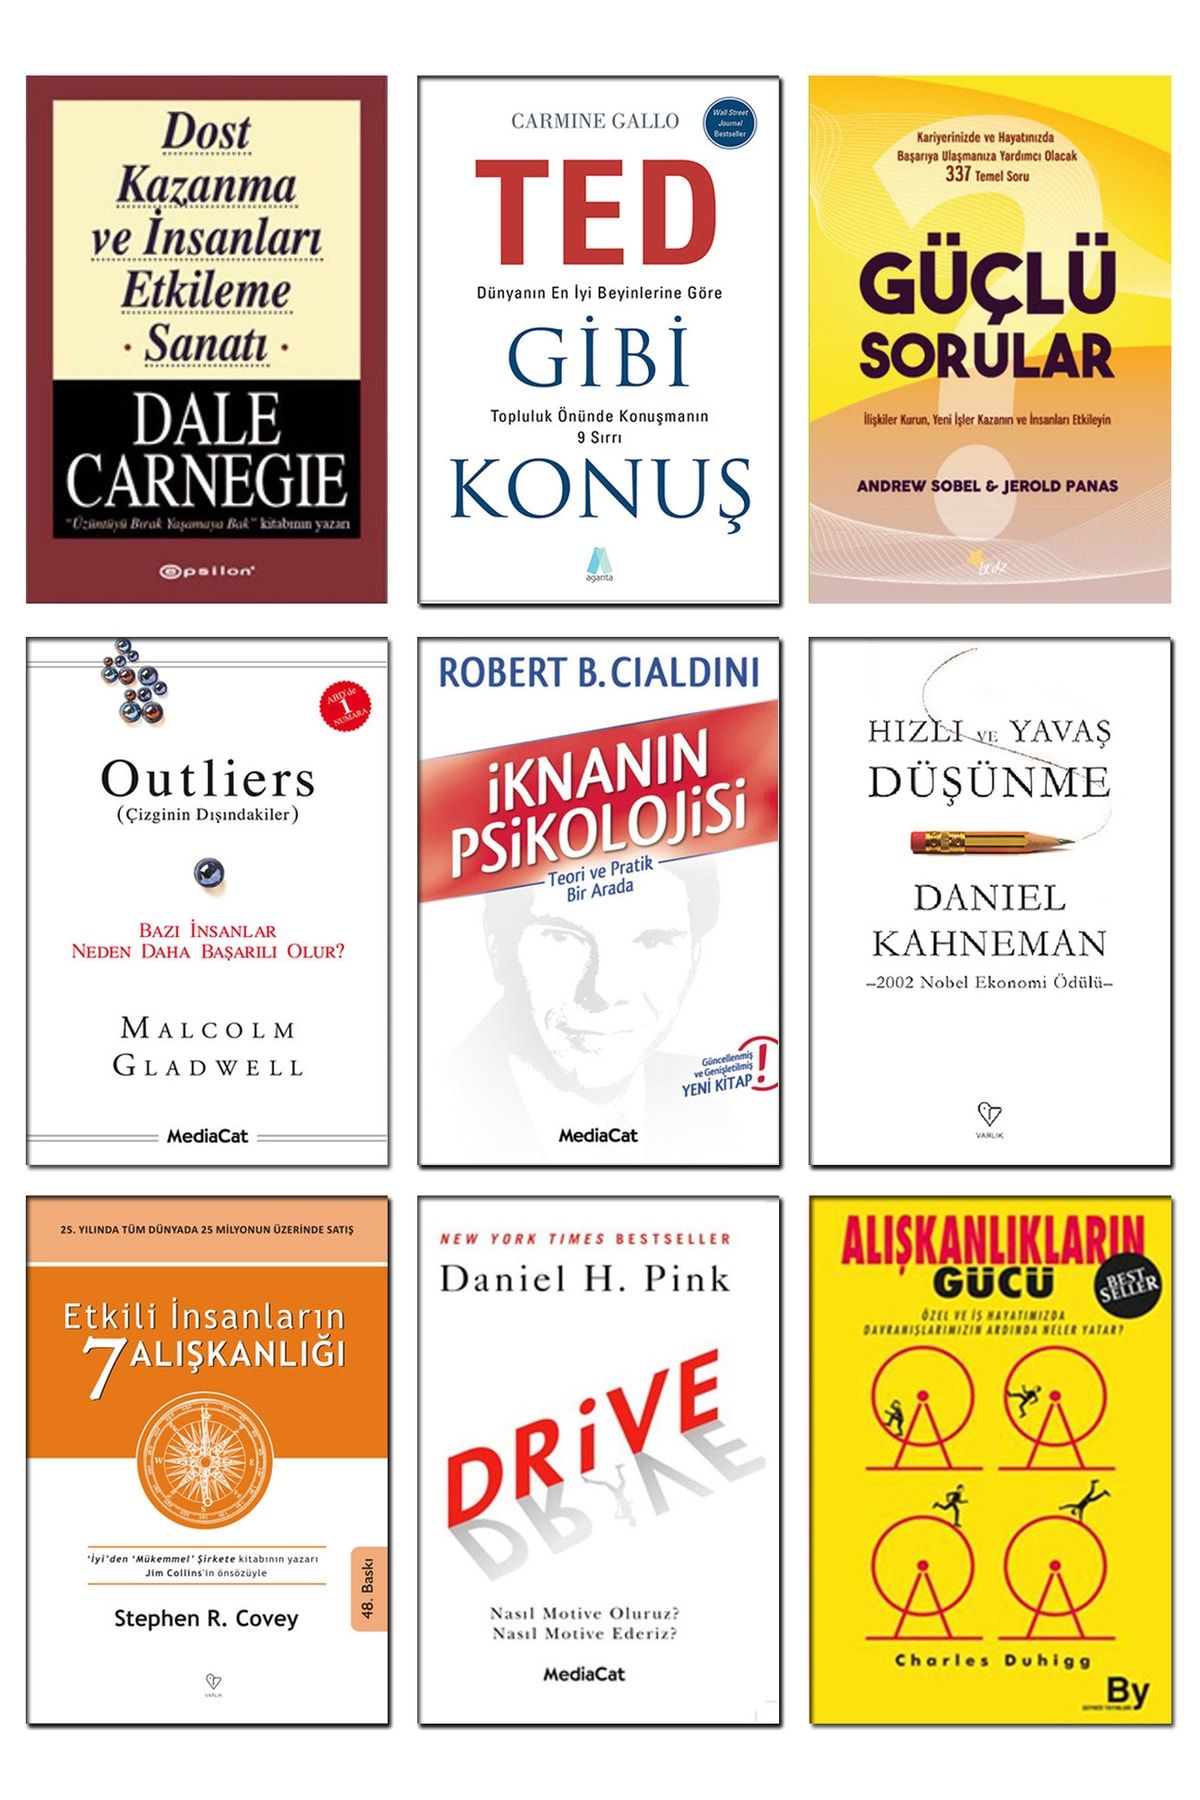 Varlık Yayınları Hızlı Ve Yavaş Düşünme Daniel Kahneman Dost Kazanma Ve Insanları Etkileme Sanatı Dale Carnegie